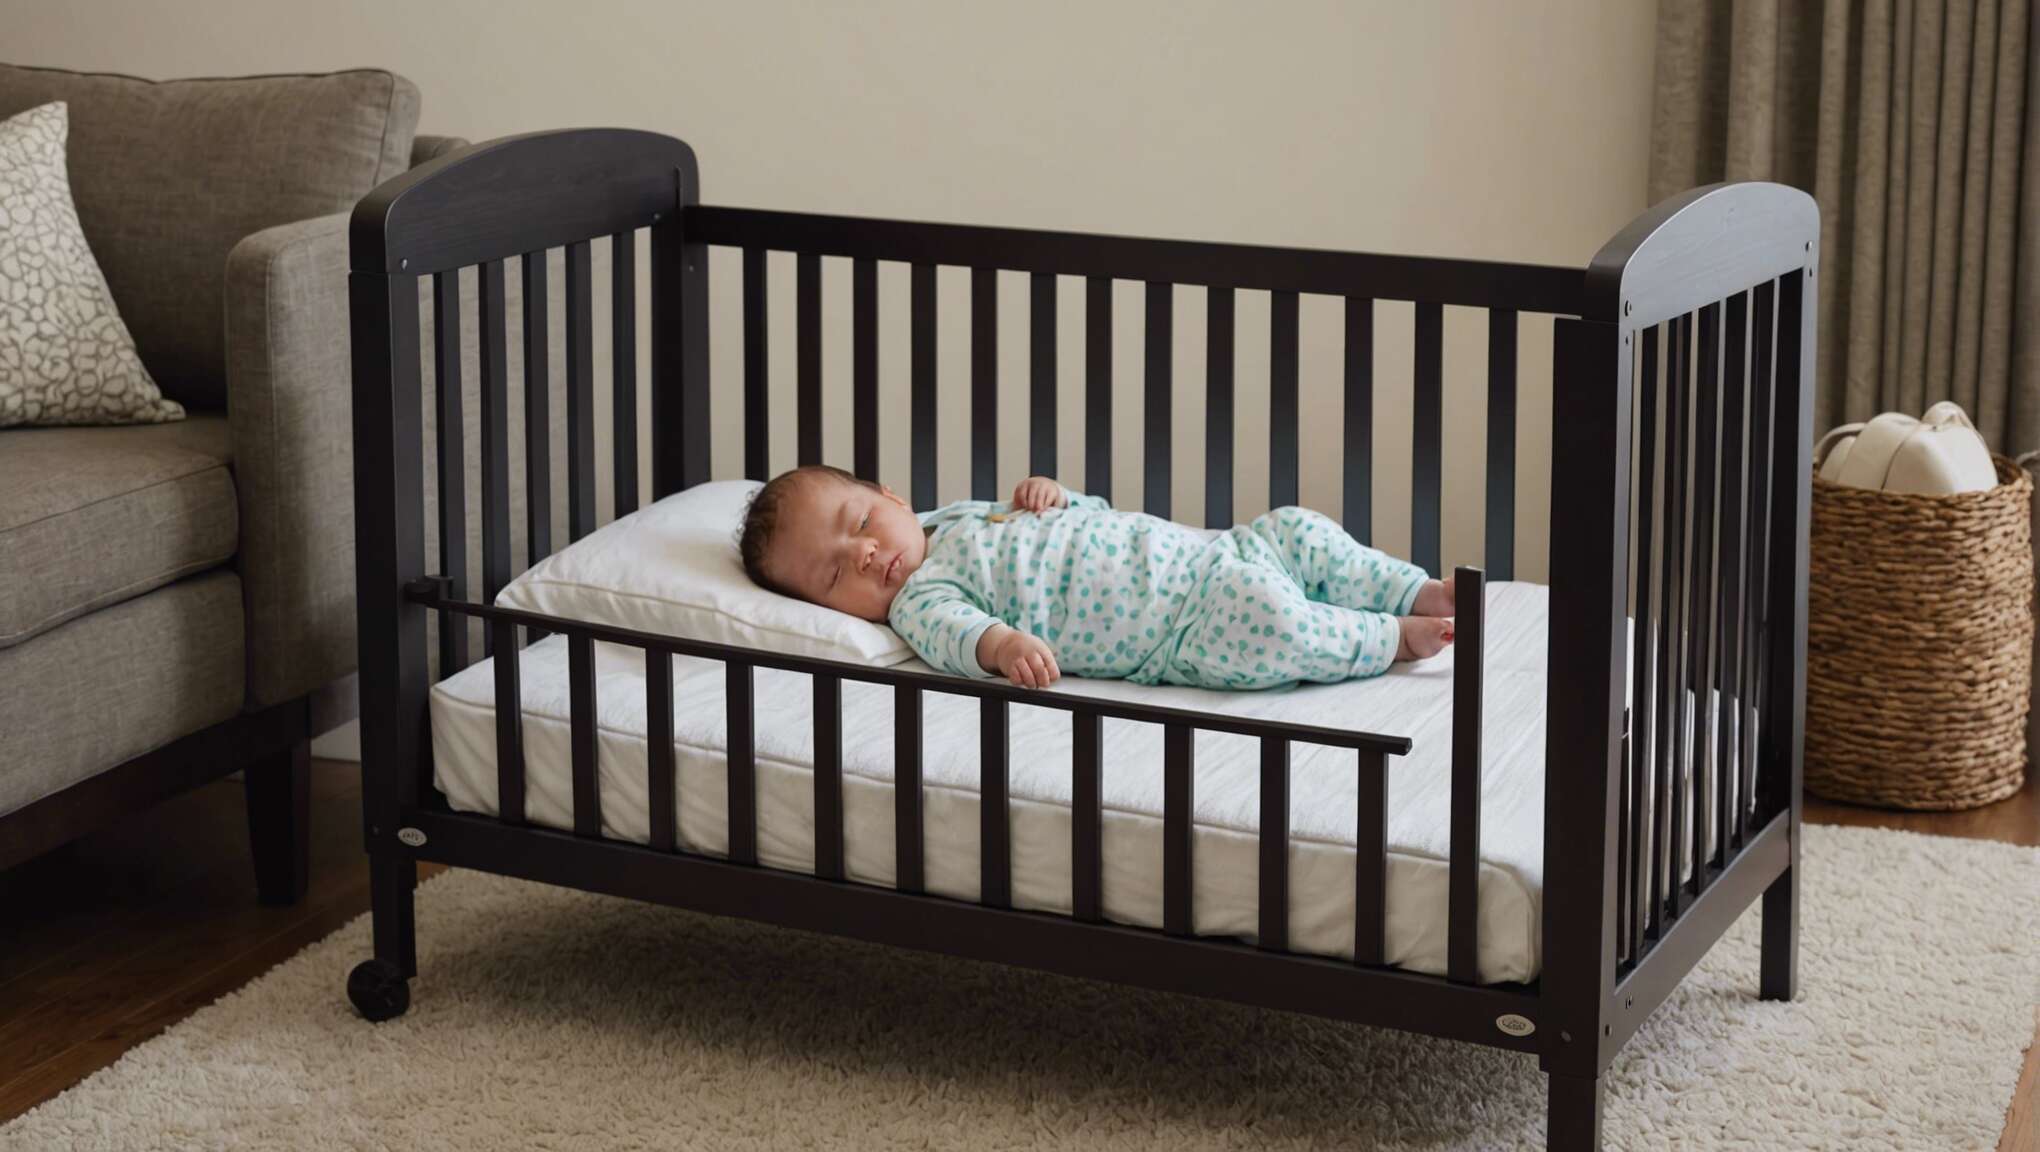 Conseils pour dormir sereinement en voyage avec bébé : lits portatifs et accessoires nomades